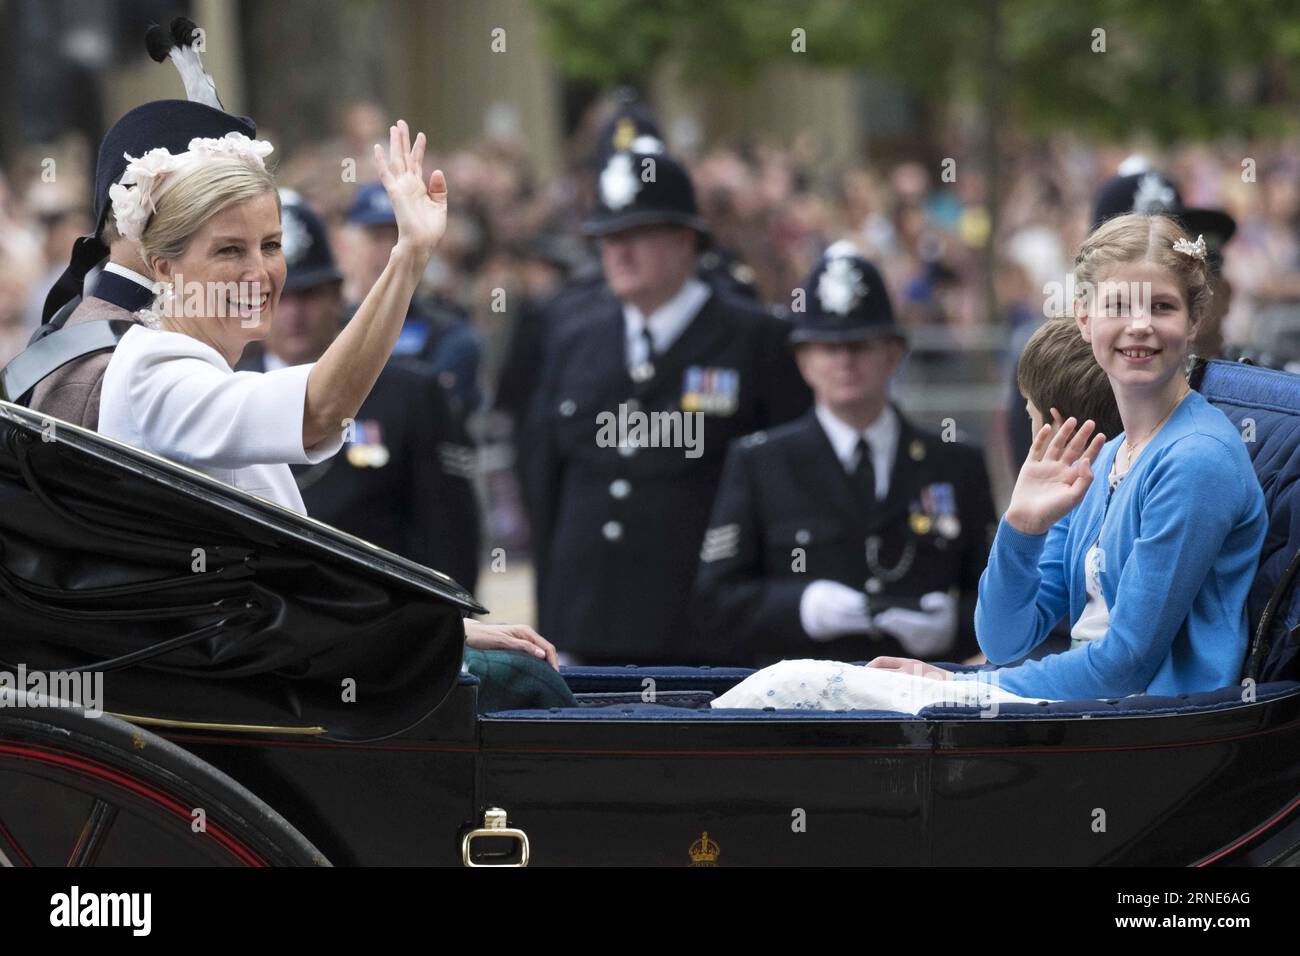 (160611) -- LONDRA, 11 giugno 2016 -- Sophie della Gran Bretagna, contessa del Wessex (L), e Lady Louise Windsor sono viste su una carrozza diretta per le celebrazioni del 90° compleanno della Regina a Londra, in Gran Bretagna, l'11 giugno 2016. ) BRITAIN-LONDON-ROYAL-QUEEN-BIRTHDAY CELEBRATION RayxTang PUBLICATIONxNOTxINxCHN 160611 Londra 11 giugno 2016 Britain S Sophie Contessa di Wessex l e Lady Louise Windsor sono laghi SU una carrozza diretta per le celebrazioni del 90 ° compleanno della Regina a Londra Gran Bretagna 11 giugno 2016 Gran Bretagna Londra Royal Queen Birthday Celebration RayxTang PUBLICATIONXNOTxINxCHN Foto Stock